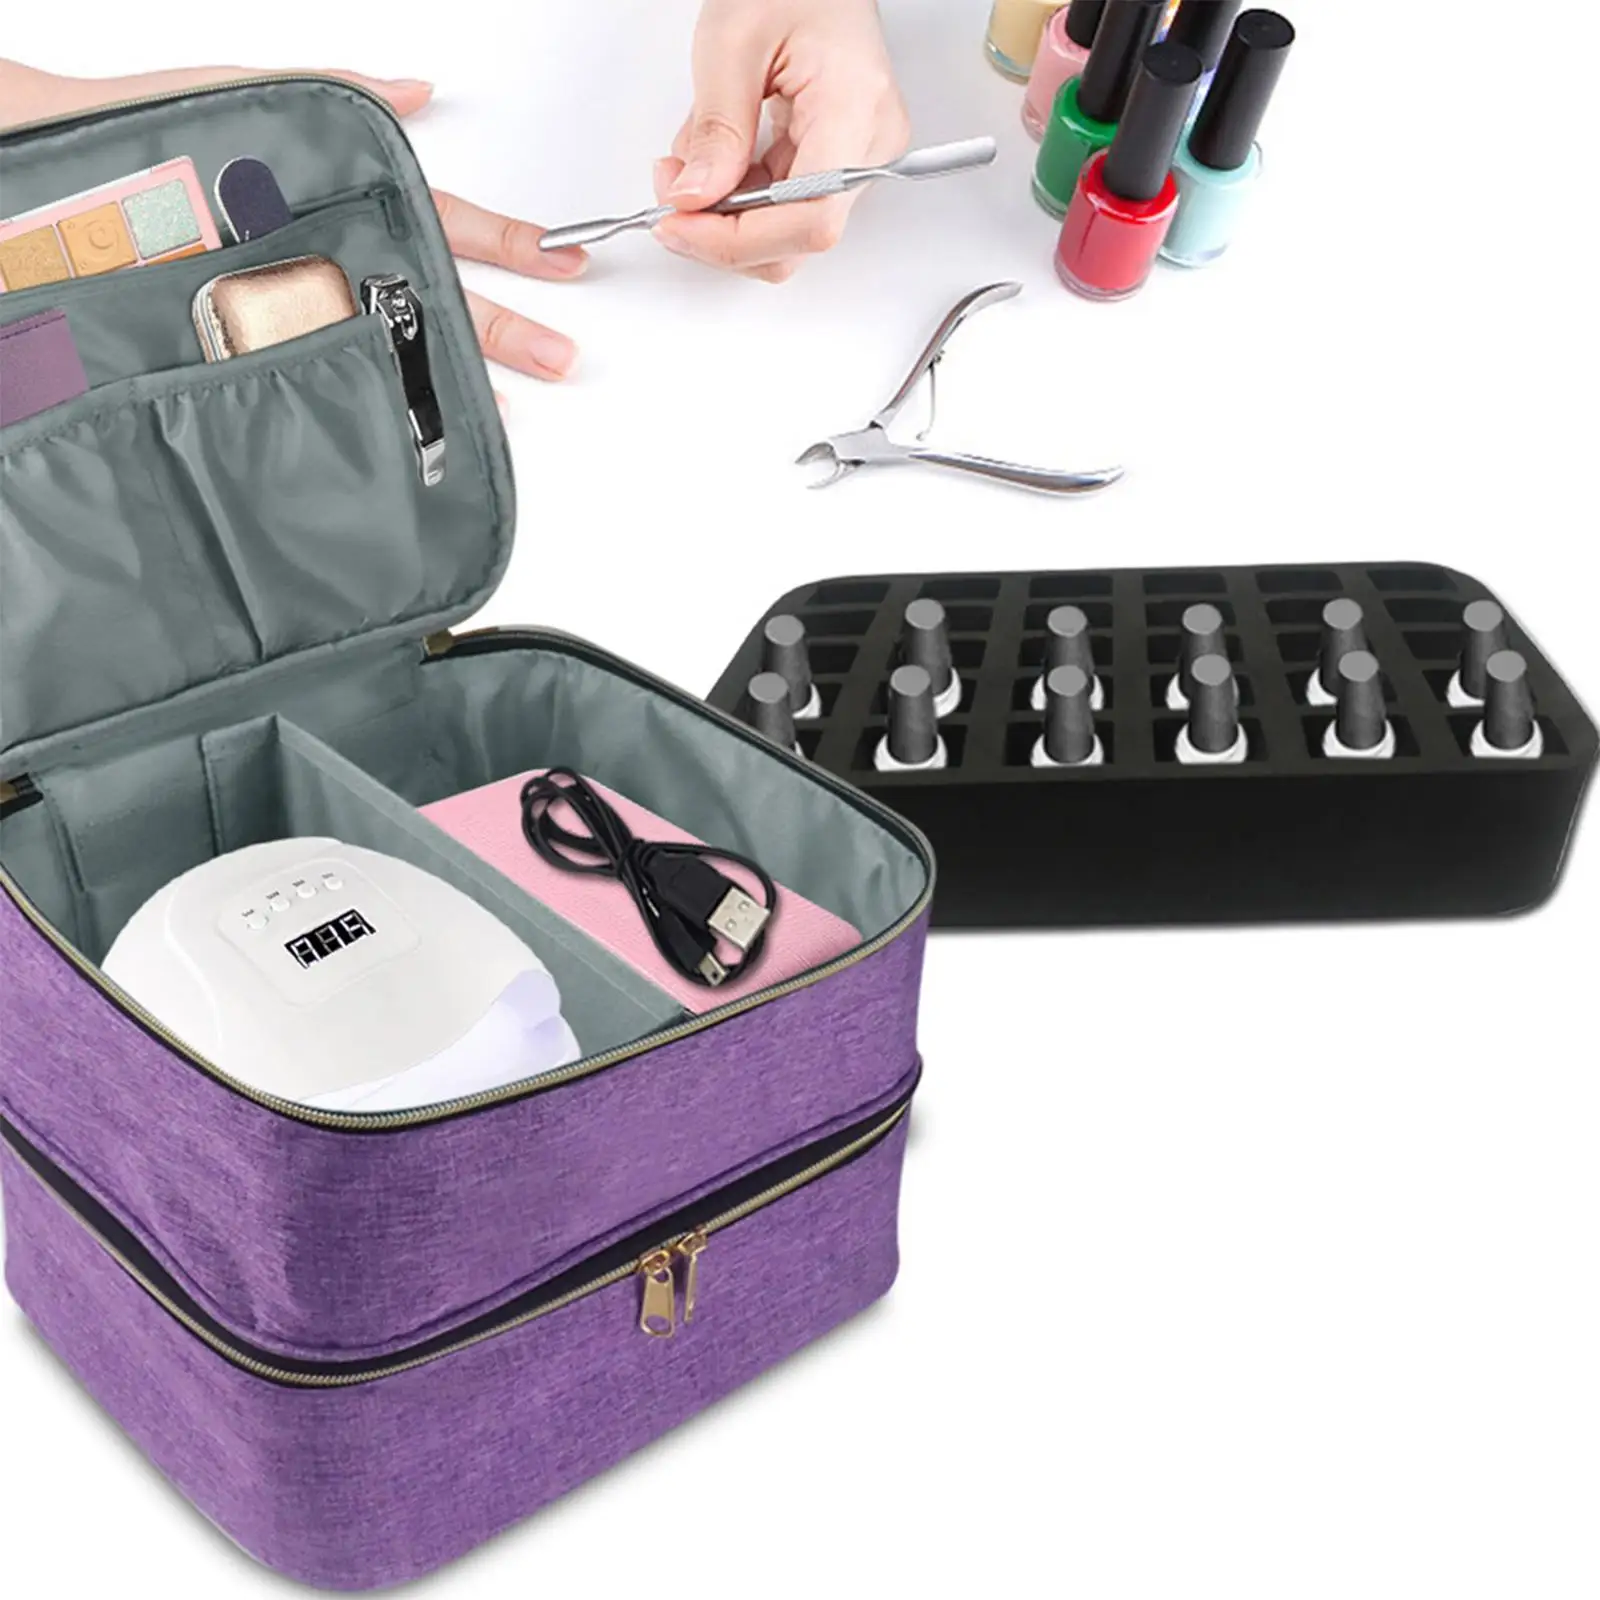 organizador de pintauñas maletin – Compra organizador de pintauñas maletin  con envío gratis en AliExpress version